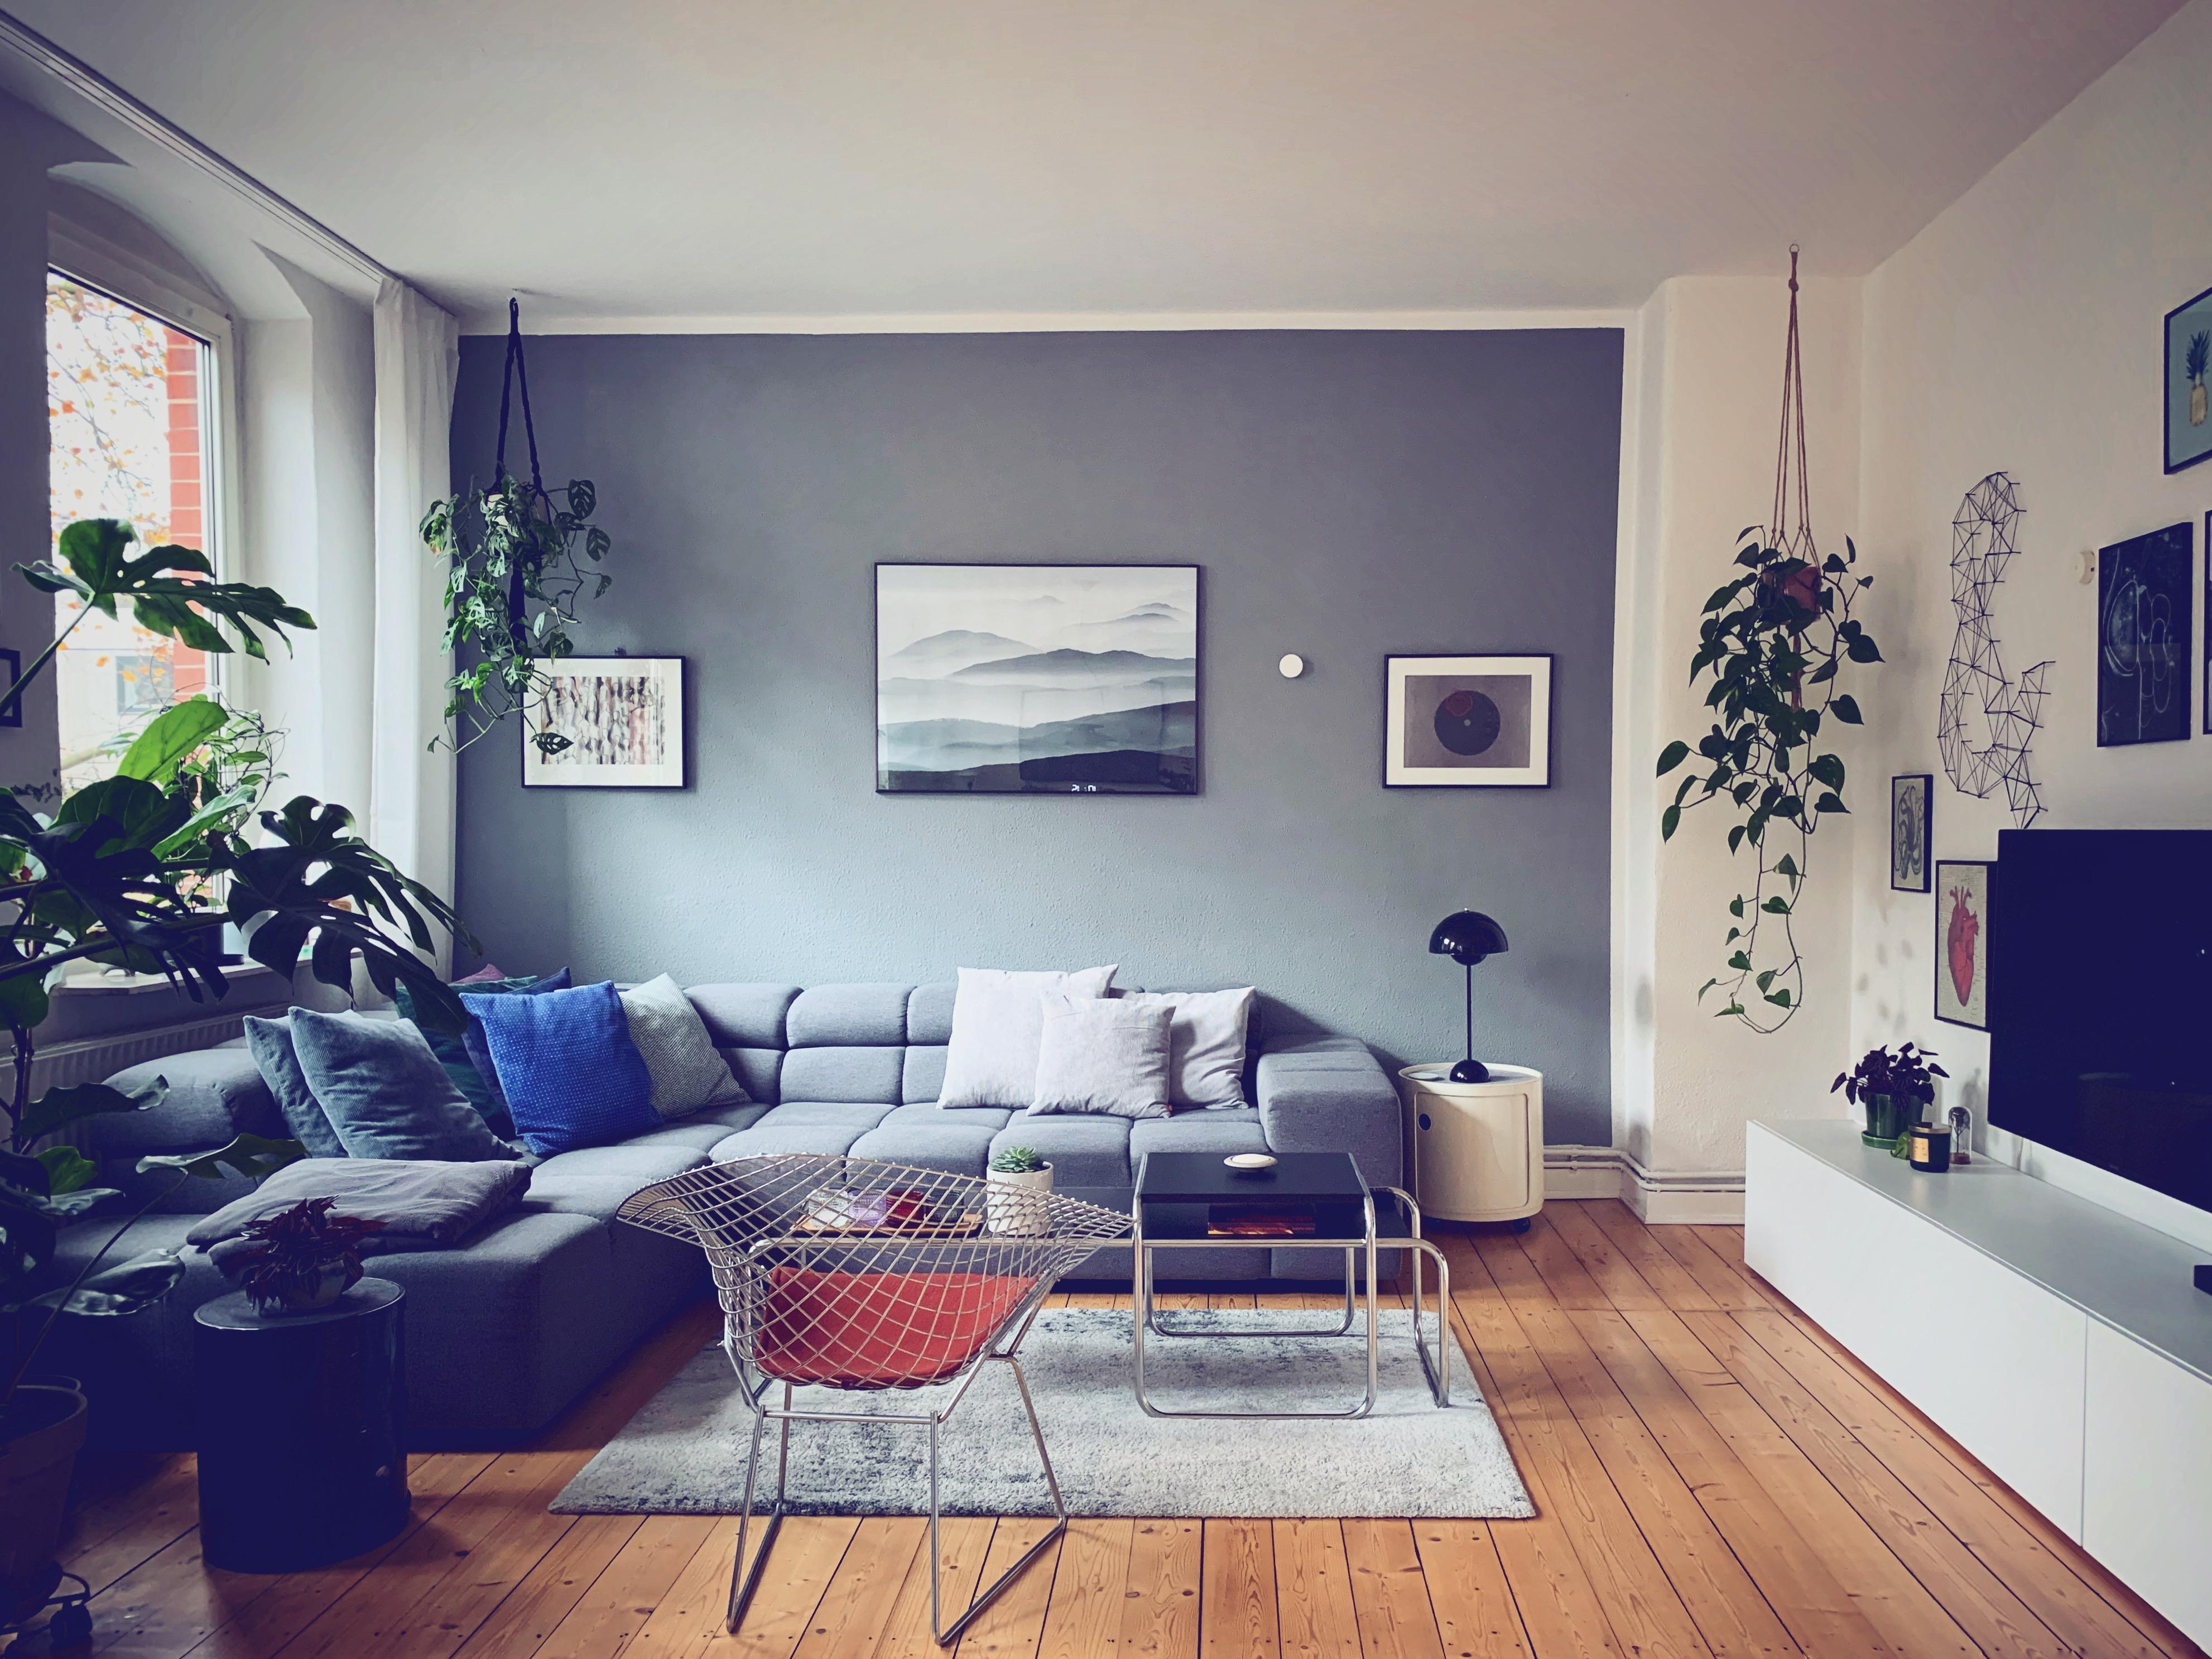 Grau in grau, das soll nächstes jahr anders werden. Die Couch ist fällig... #couchstyle #homesweethome #herbst2019